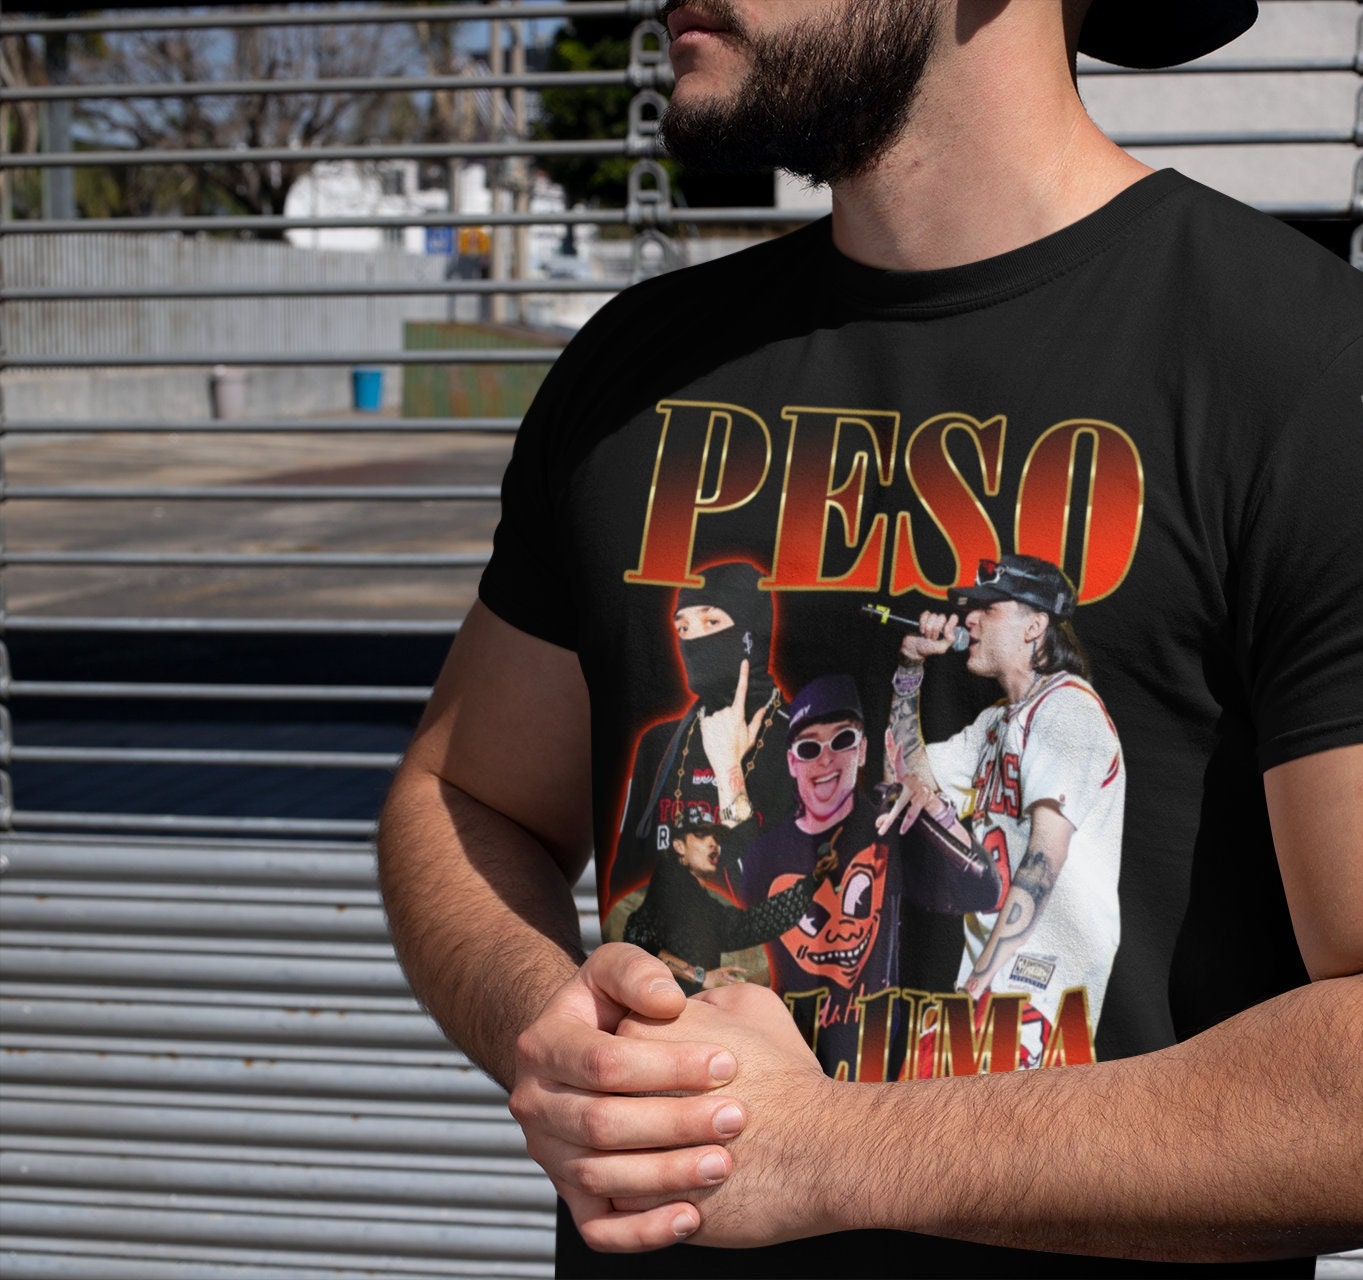 Peso Pluma 90s Vintage Shirt, Baseball Shirt - Reallgraphics